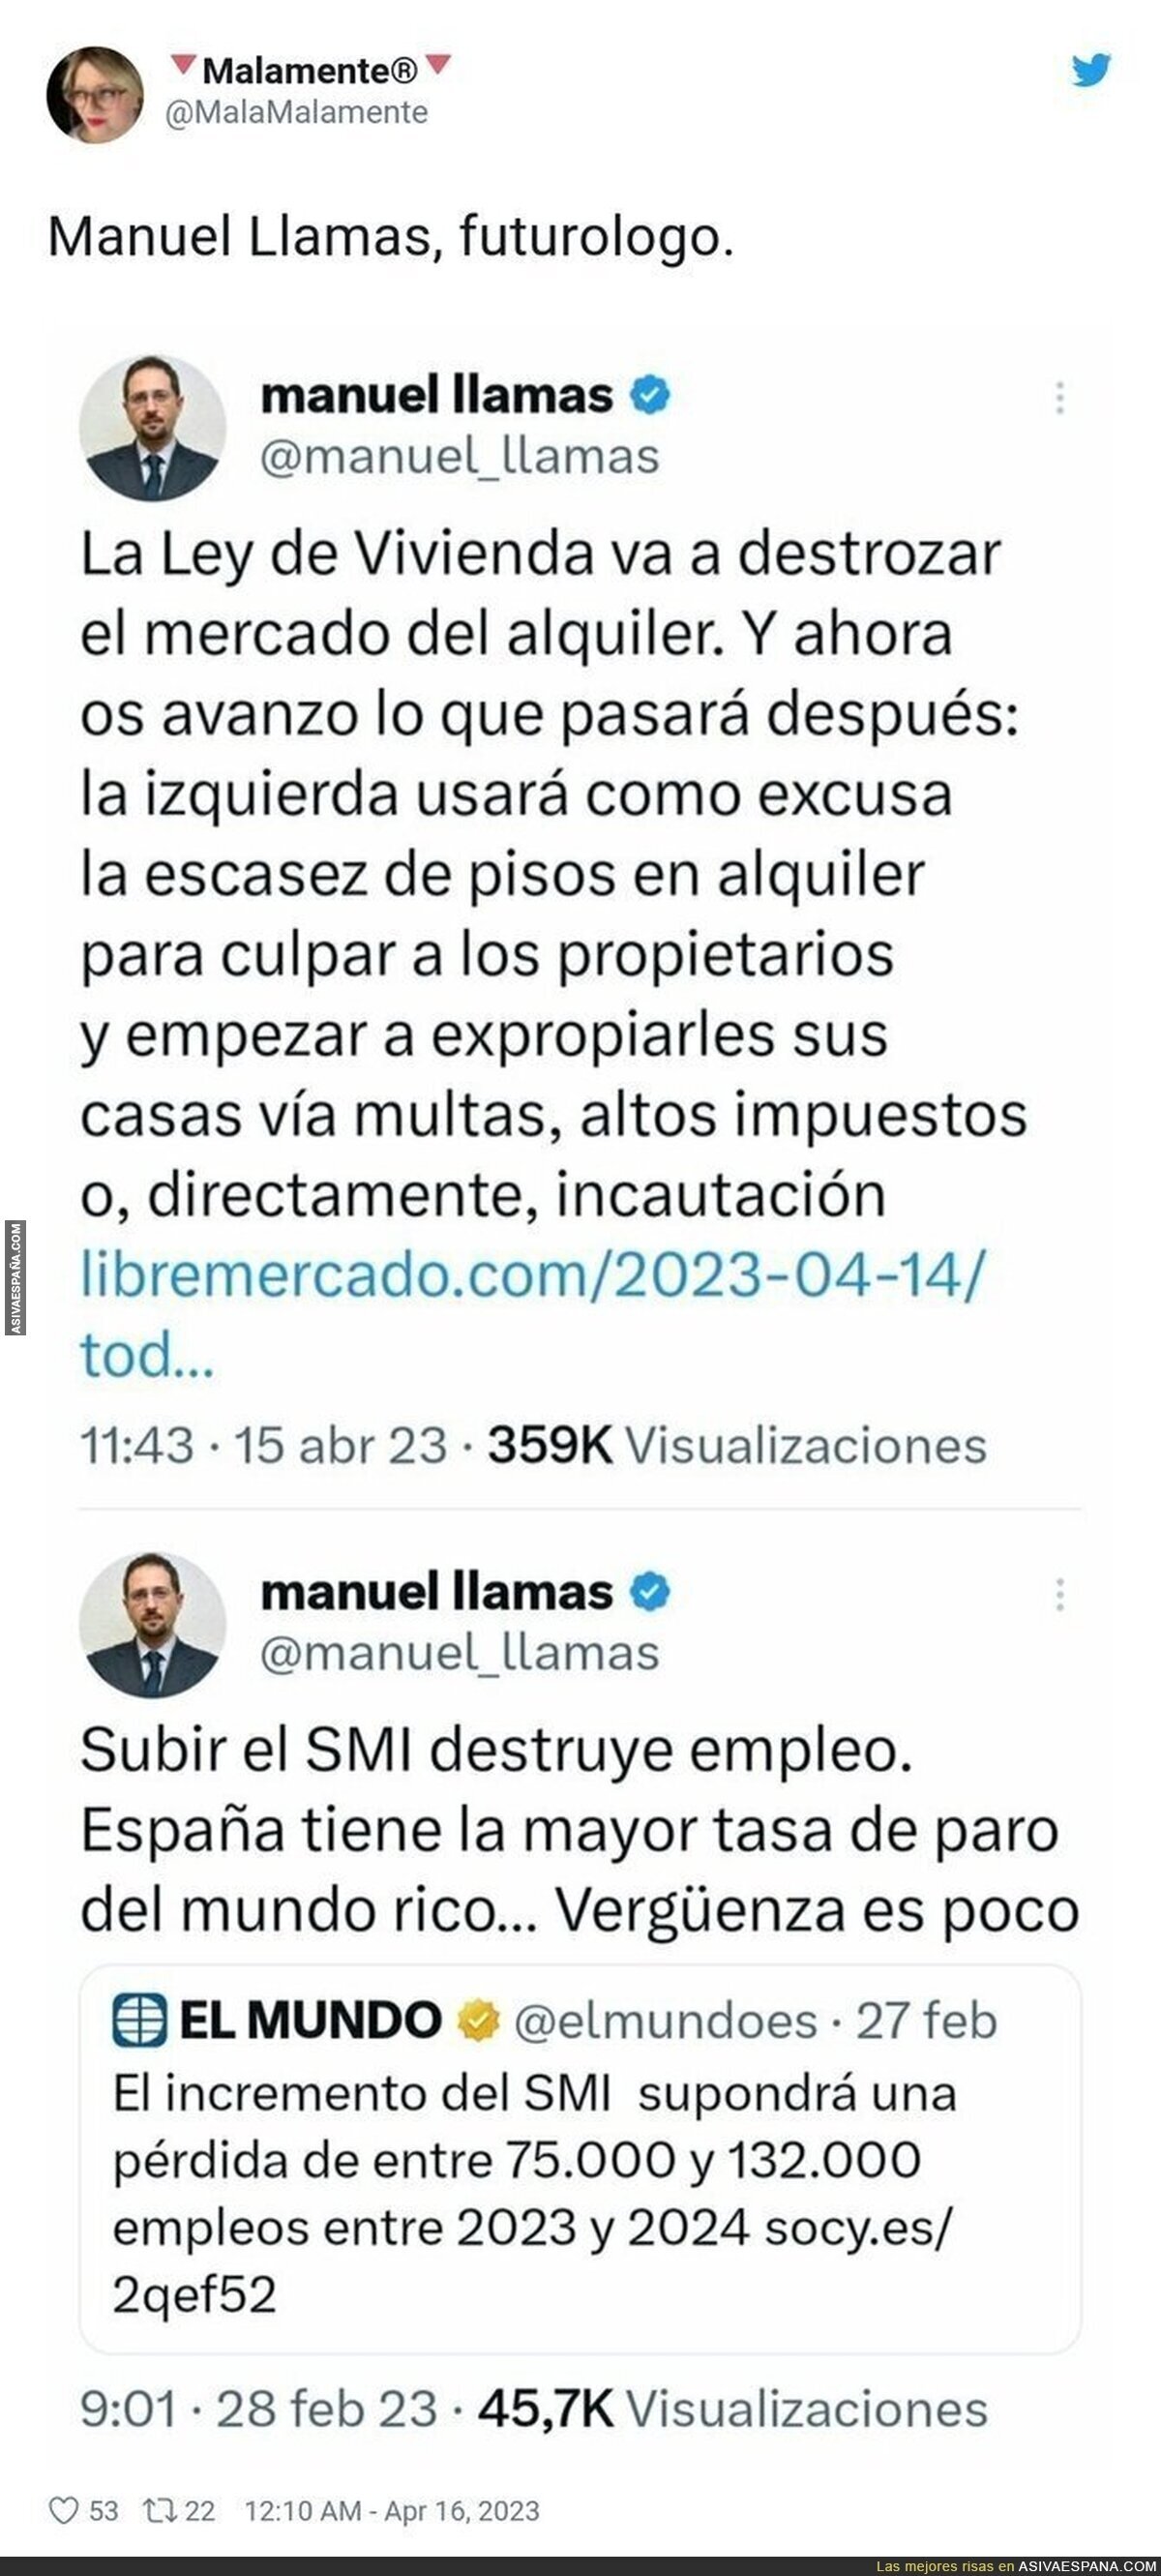 Ojalá siga hablando Manuel Llamas